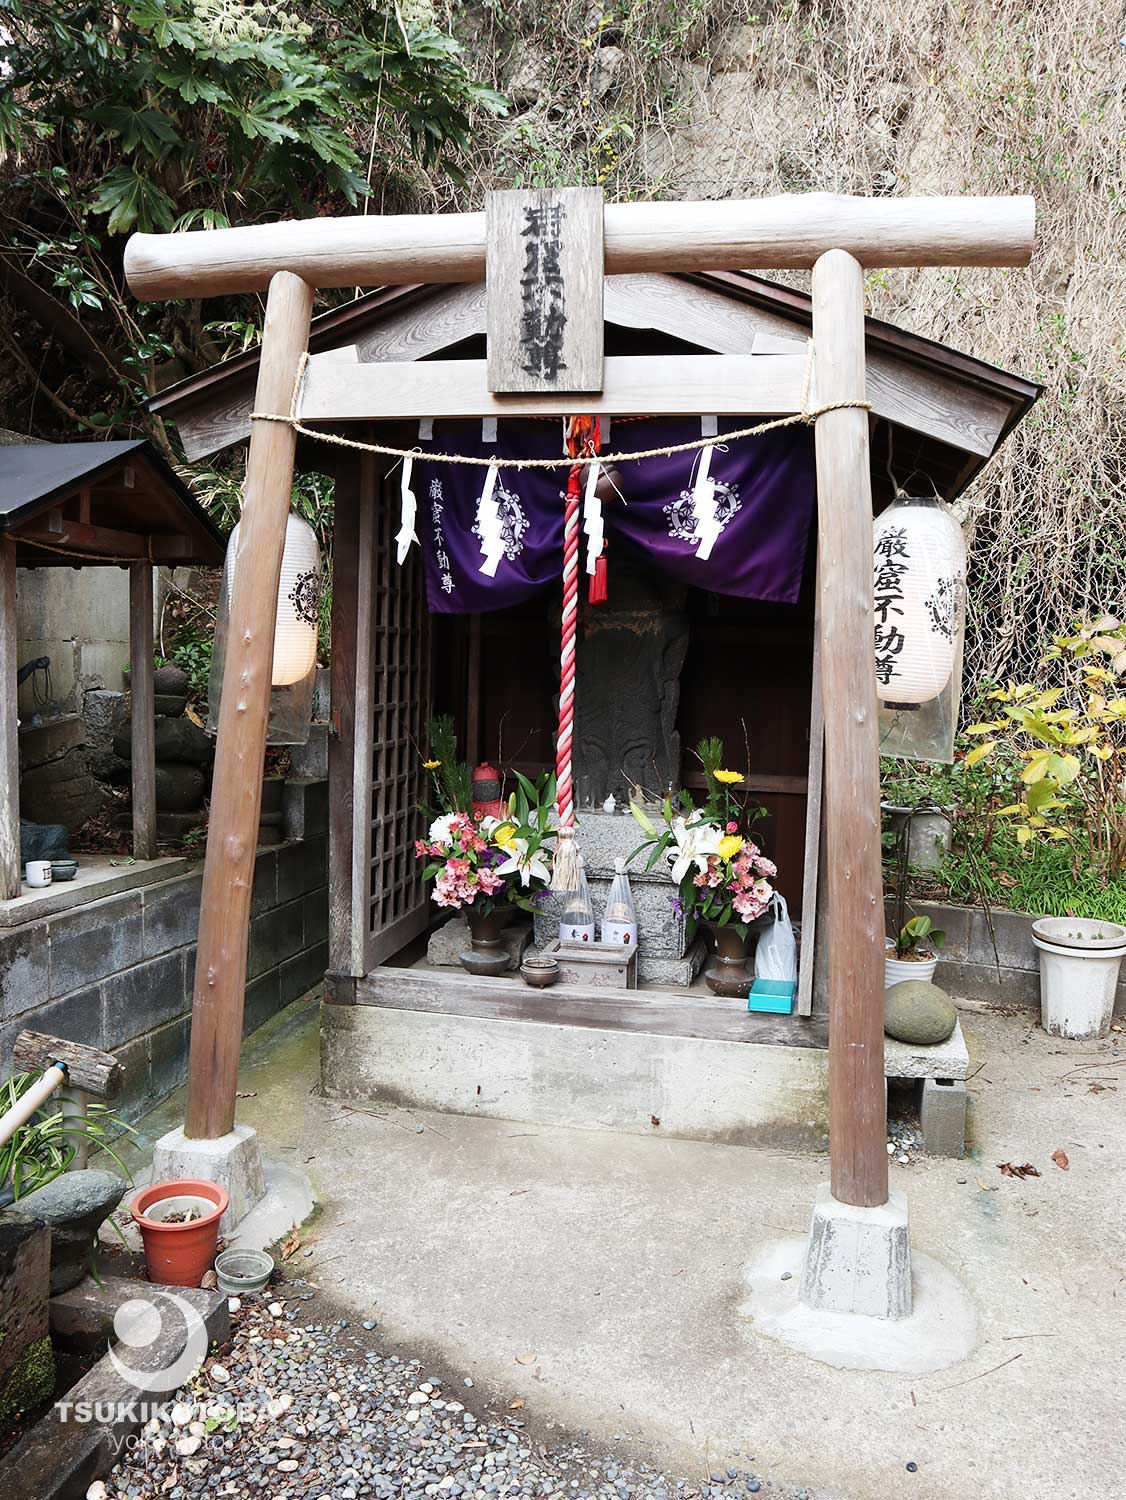 鎌倉で最も古い窟不動（窟堂：いわやどう）は、知る人ぞ知る有名な観光スポット